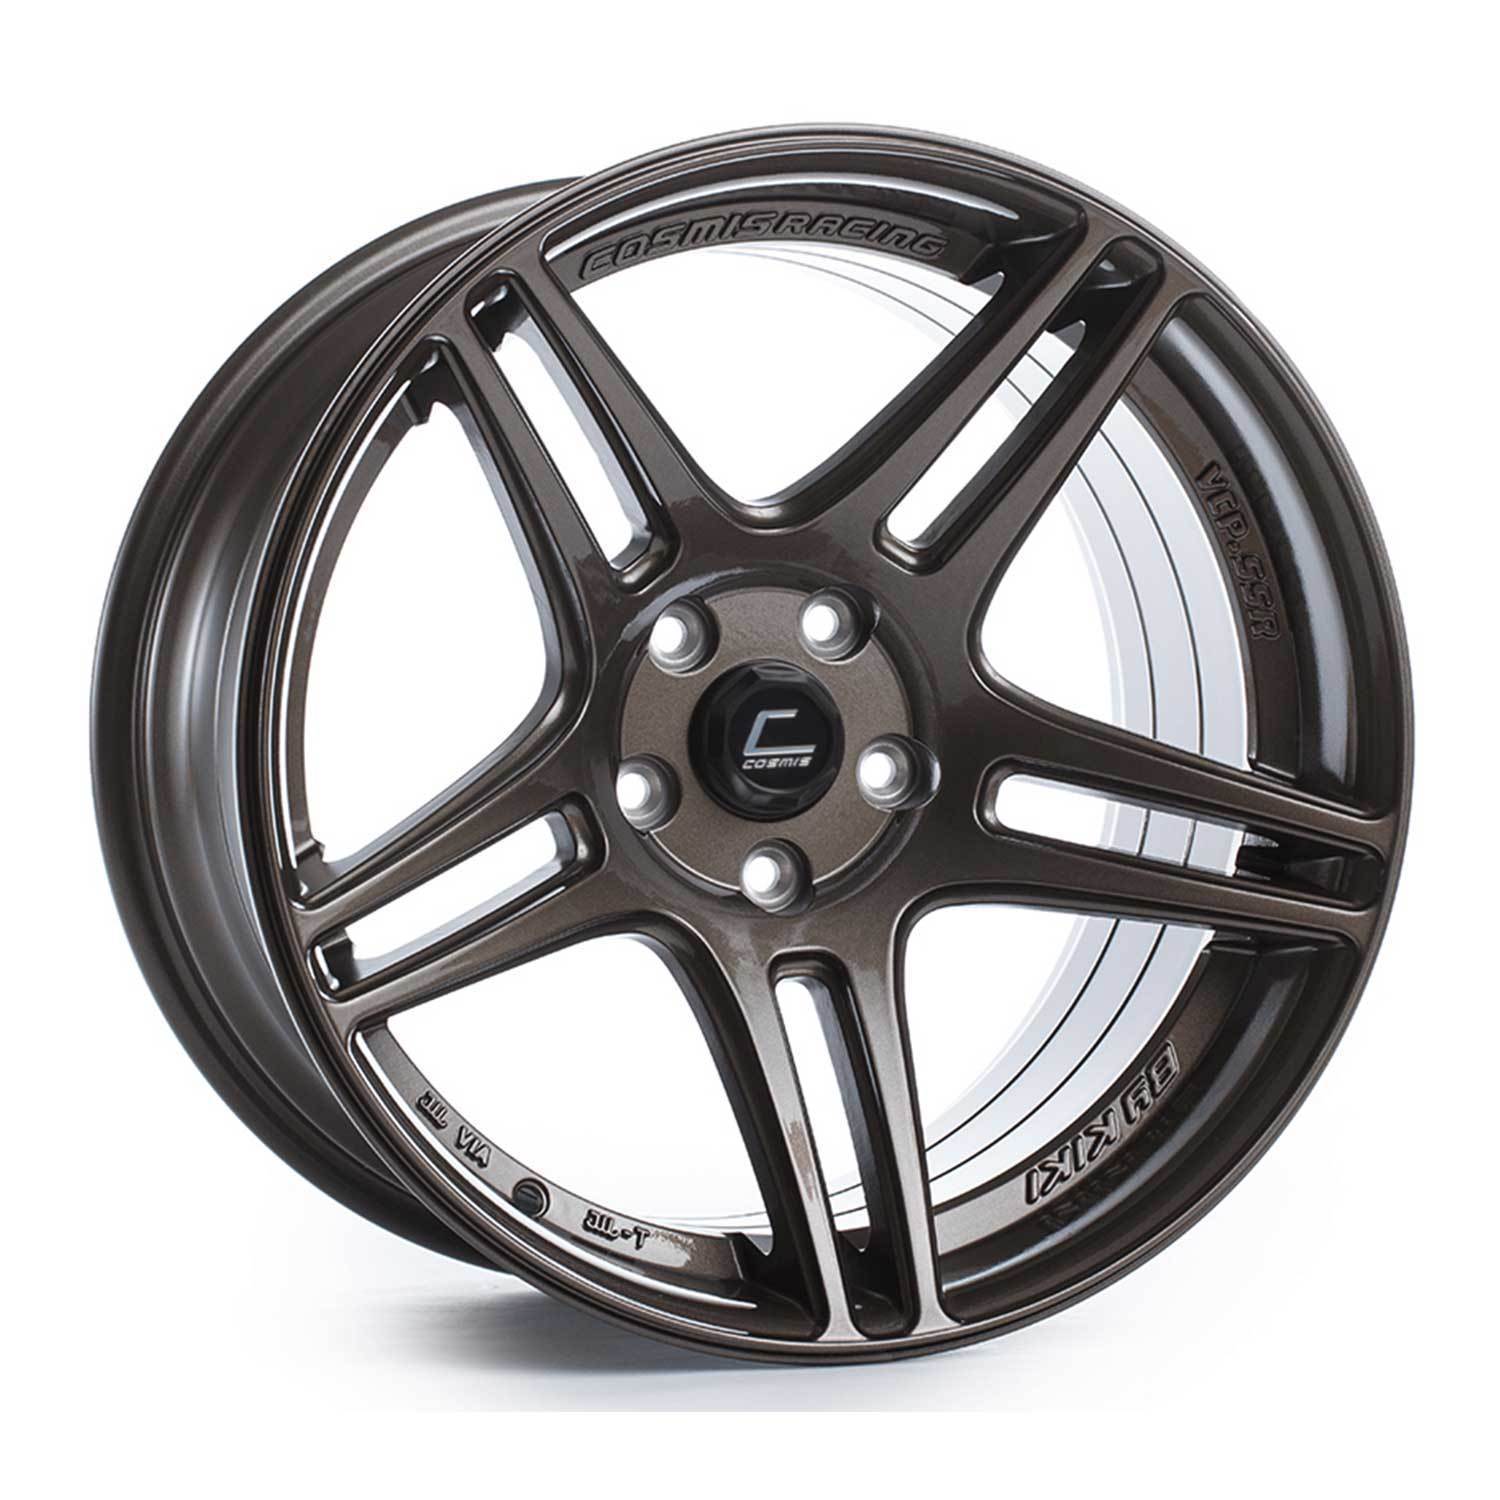 Cosmis Racing S5R Wheel Bronze 18x9 +26mm 5x114.3